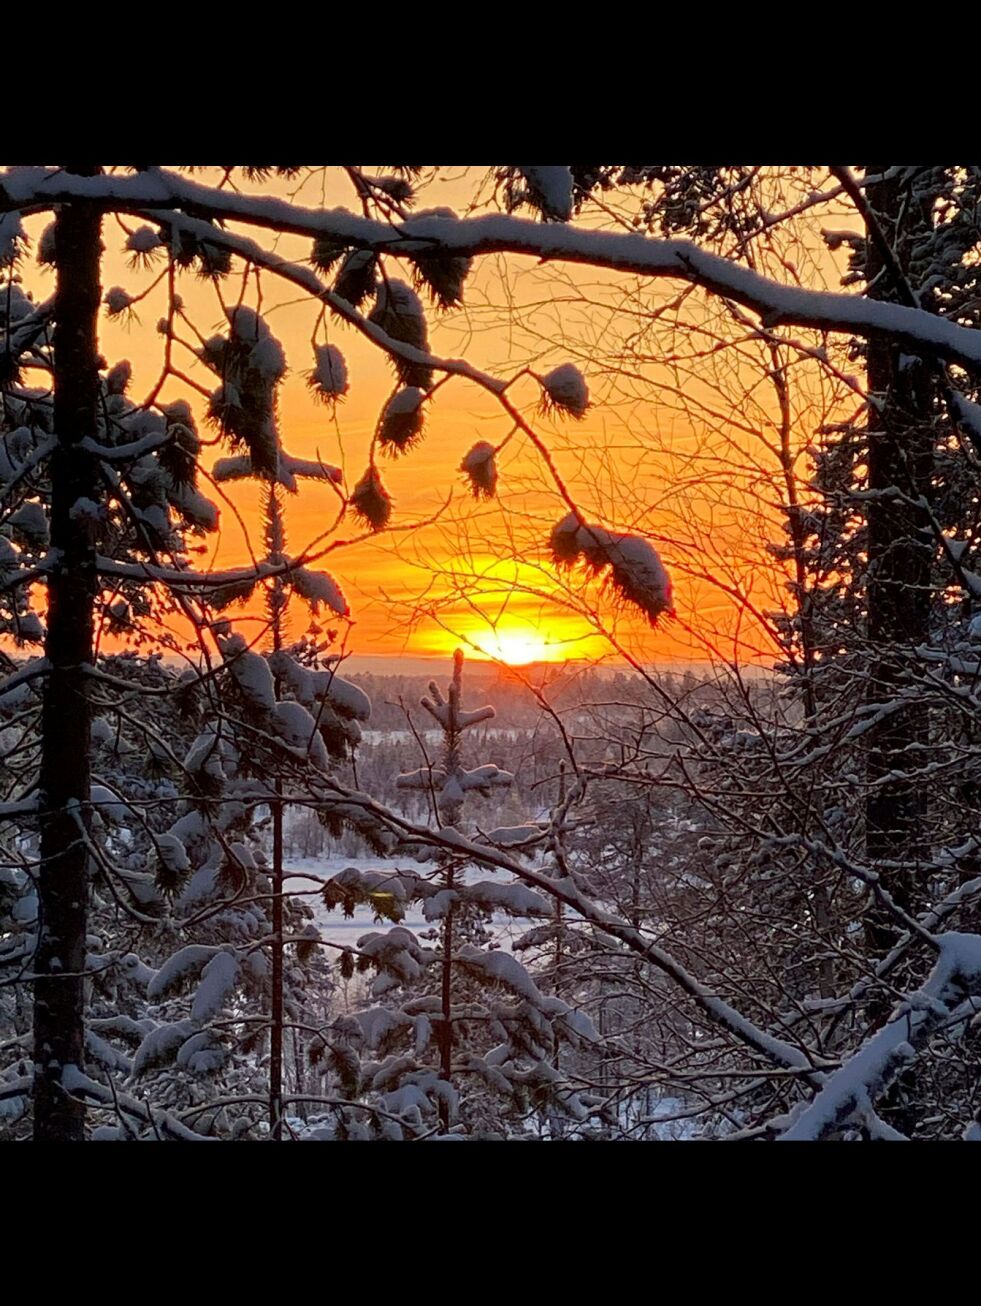 At sola er tilbake flere steder, som her i Pasvik på mandag, er utvilsomt til glede for alle som bor nord for Polarsirkelen. Foto: Ben Arne Sotkajærvi